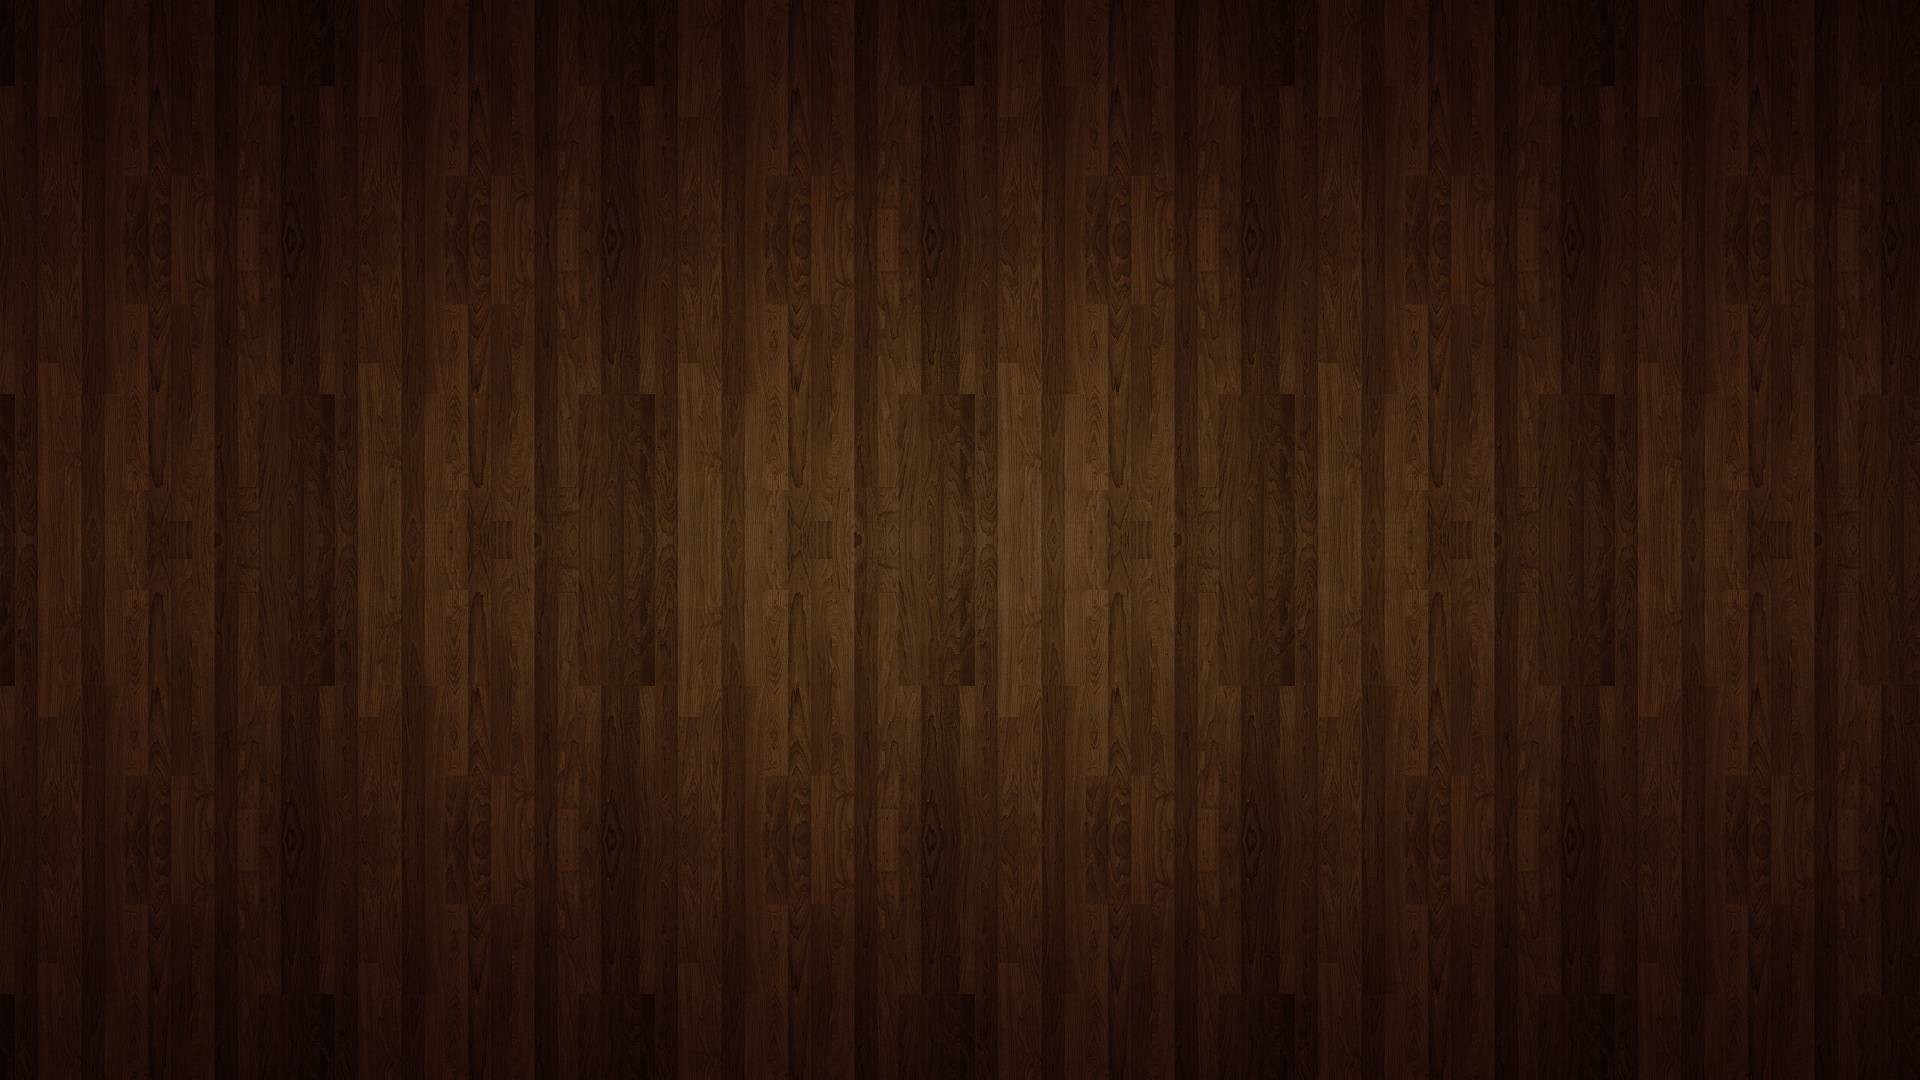 1920x1080 Wallpapers For > Wood Grain Desktop Background